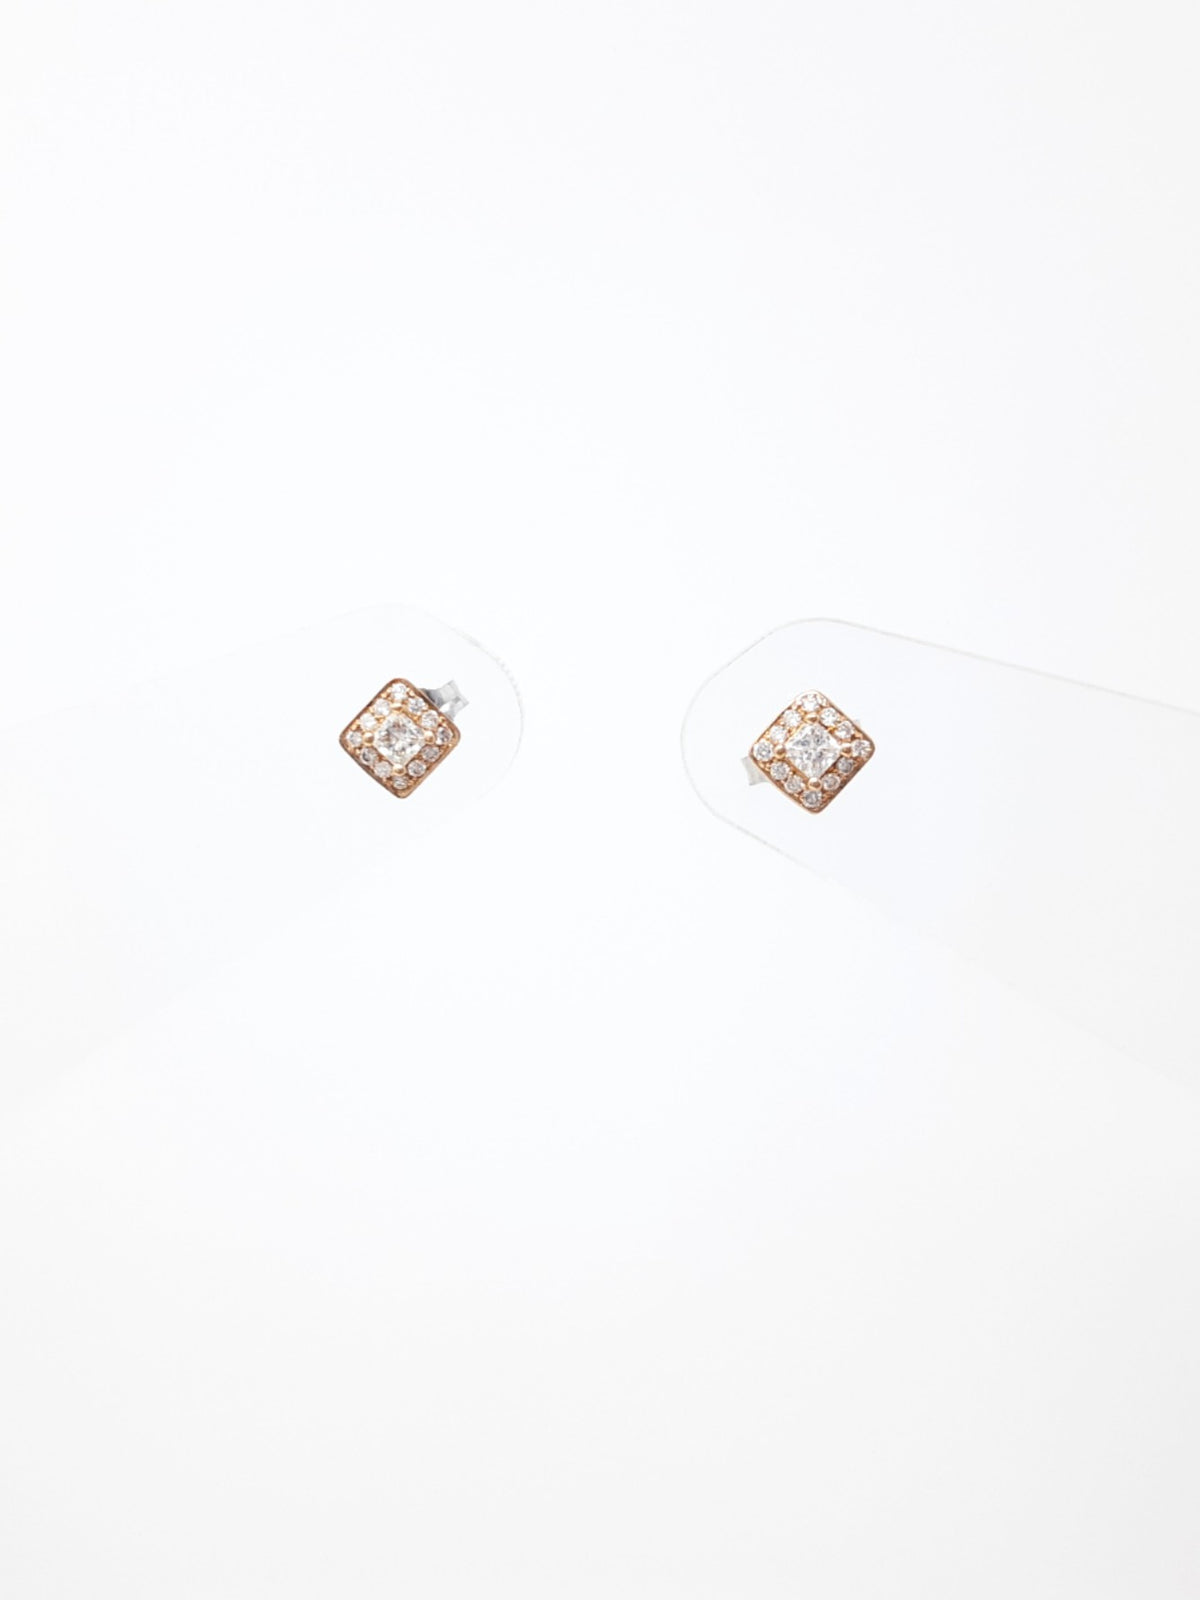 Two-Tone Canadian Diamond Earrings